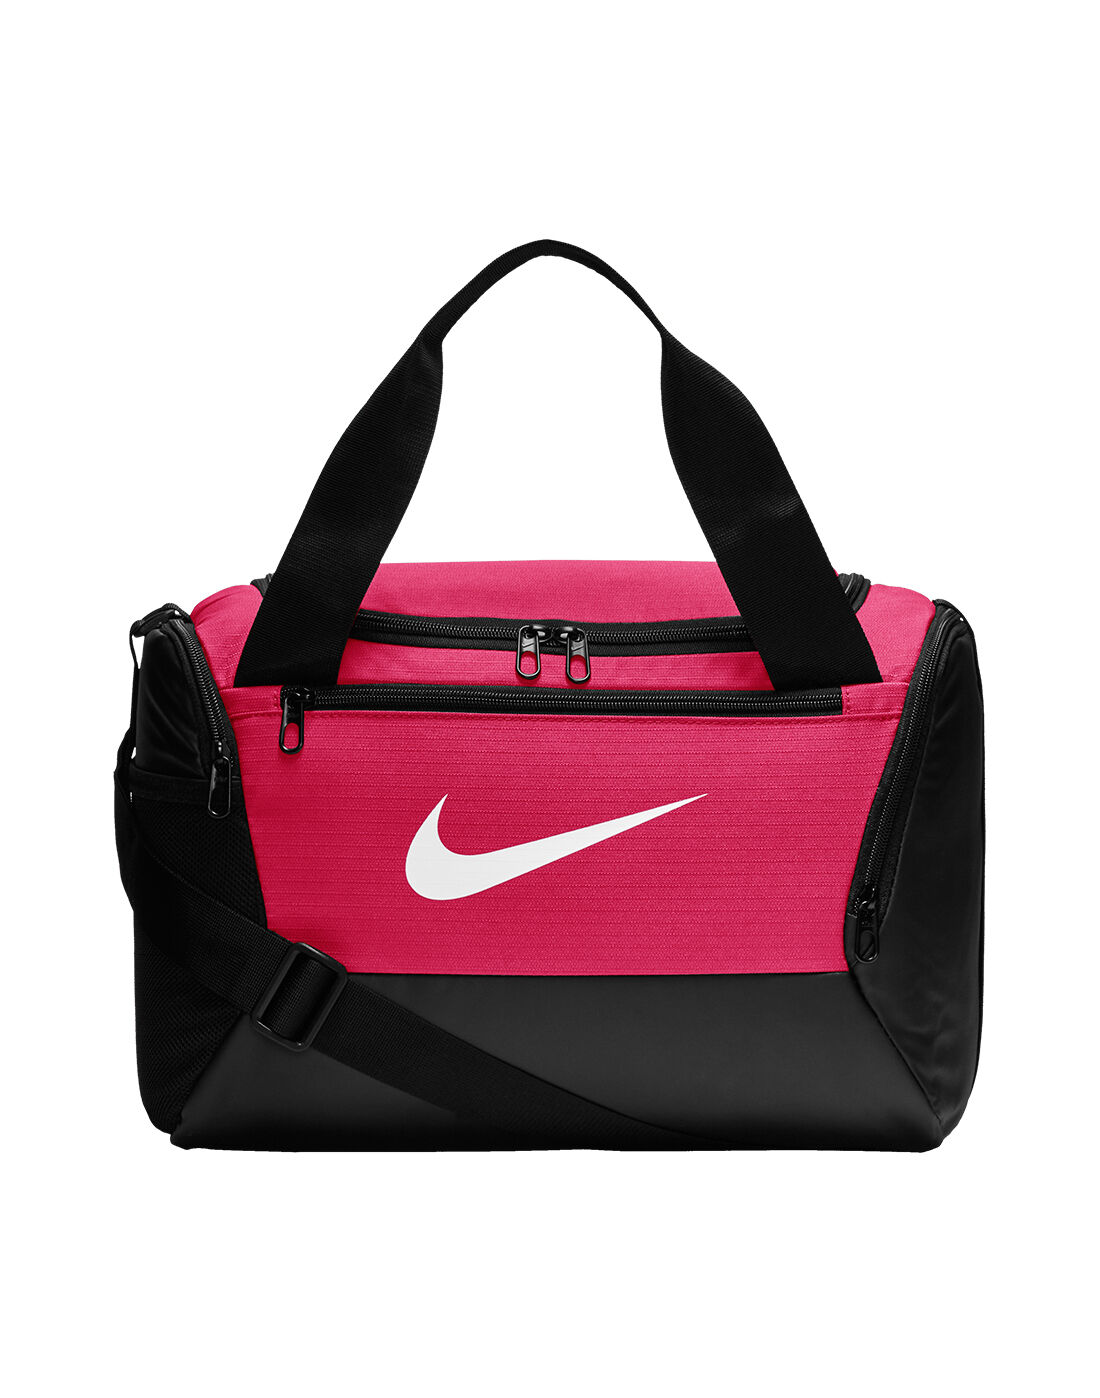 pink and black gym bag